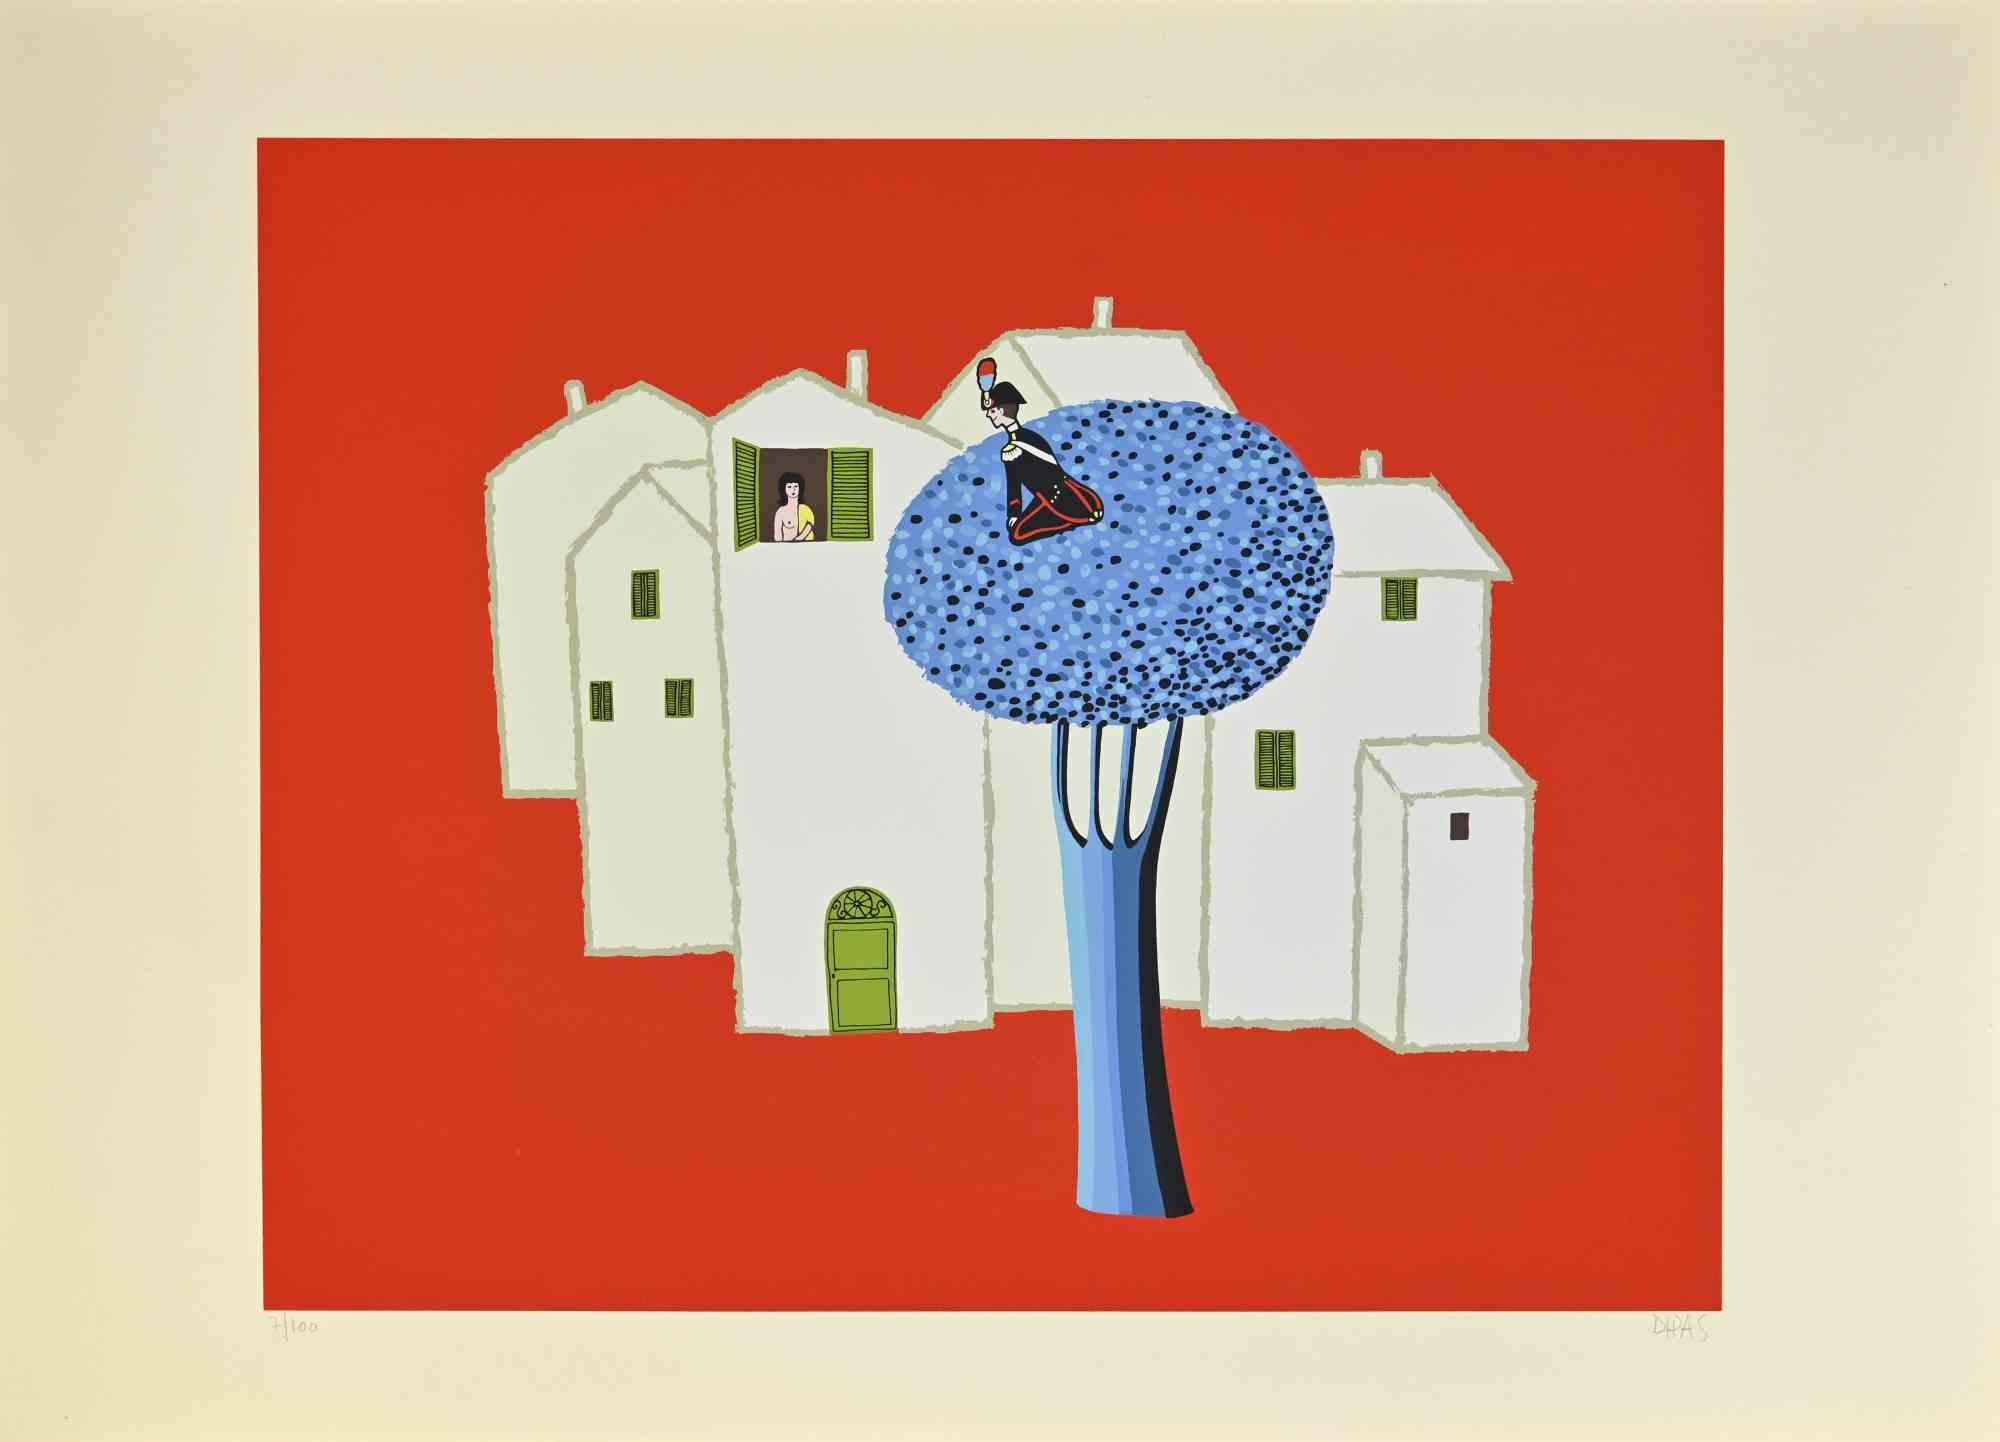 Sur l'arbre bleu est une œuvre d'art contemporain réalisée par l'artiste Dipas dans les années 1970.

Sérigraphie de couleurs mélangées.

Signé à la main dans la marge inférieure droite.

Numéroté dans la marge inférieure gauche.

Édition de 7/100.